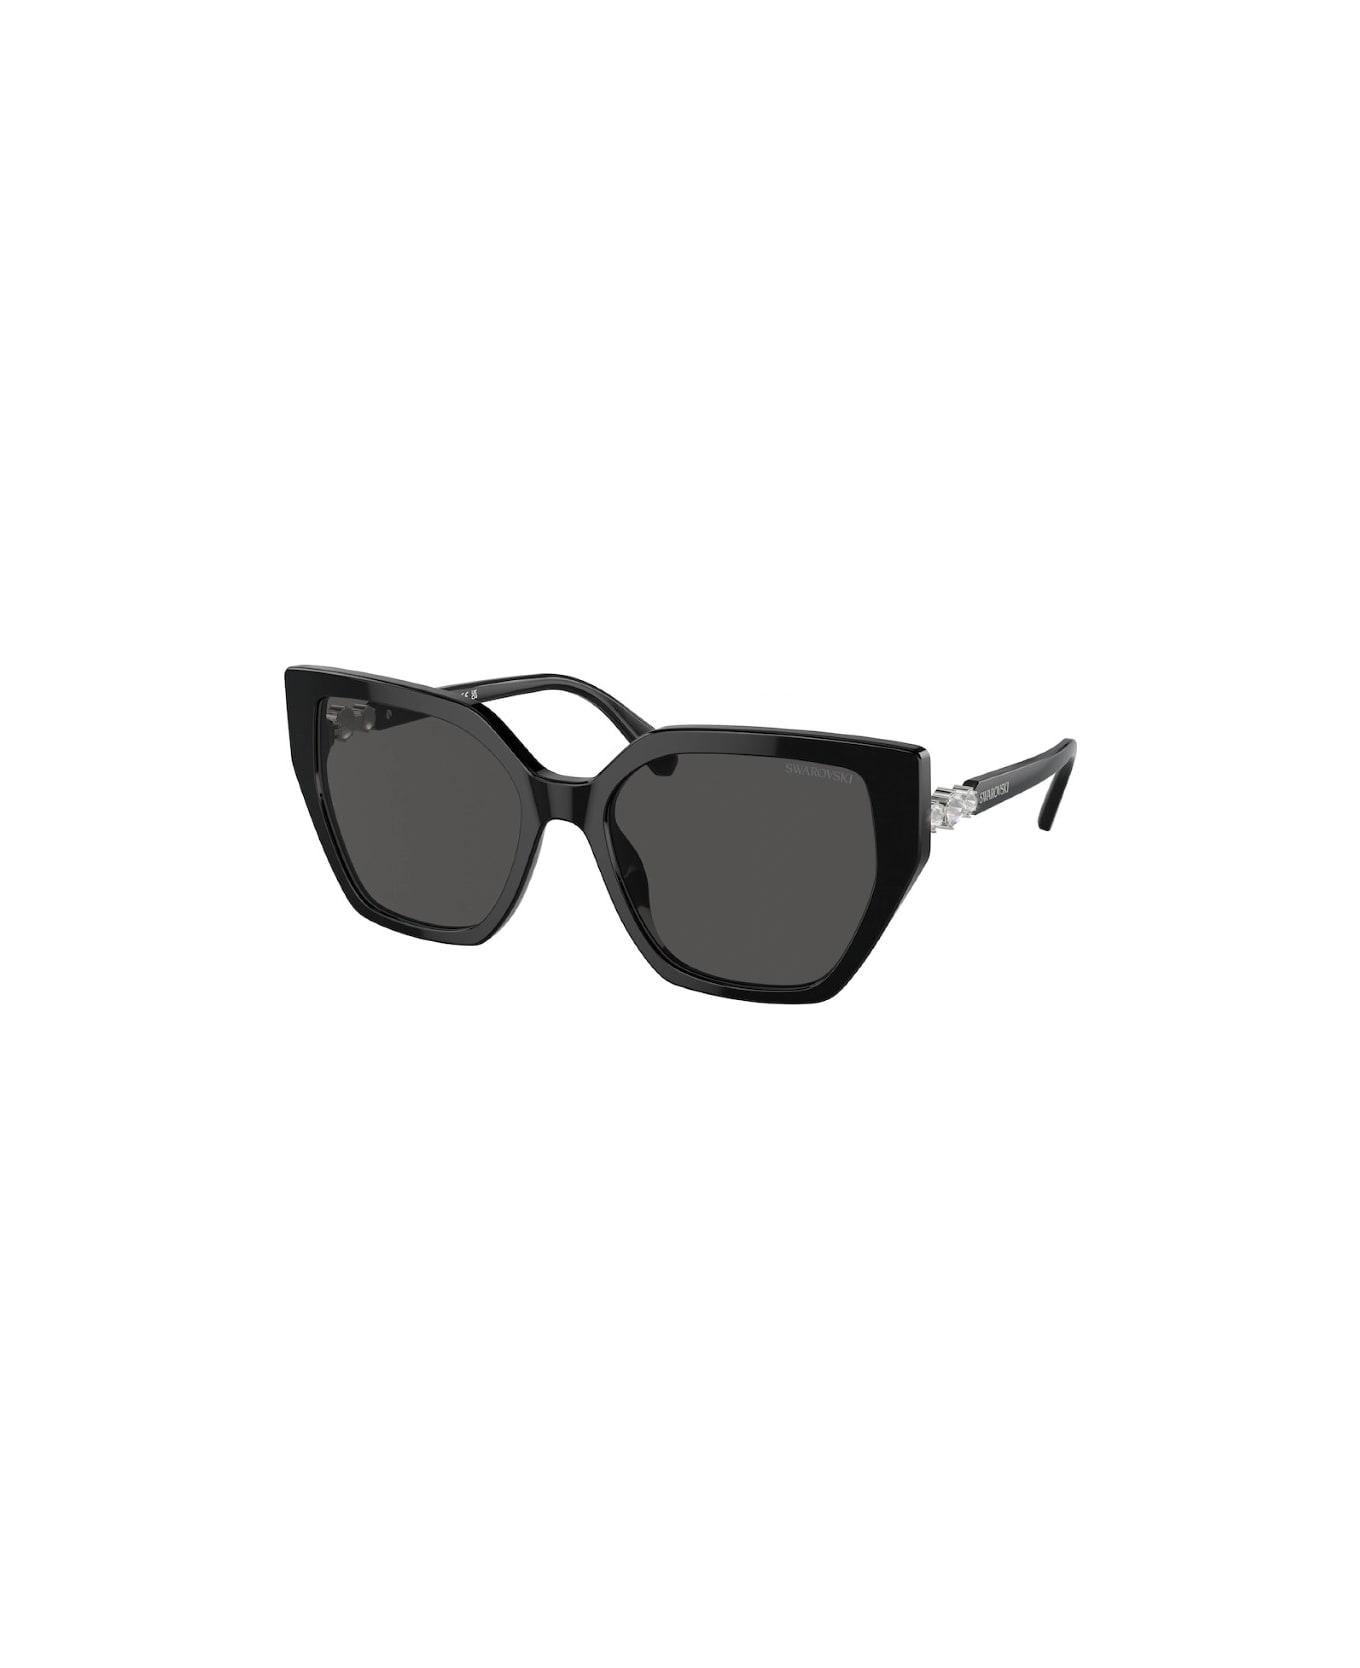 Swarovski SK6016 100187 Sunglasses - Black